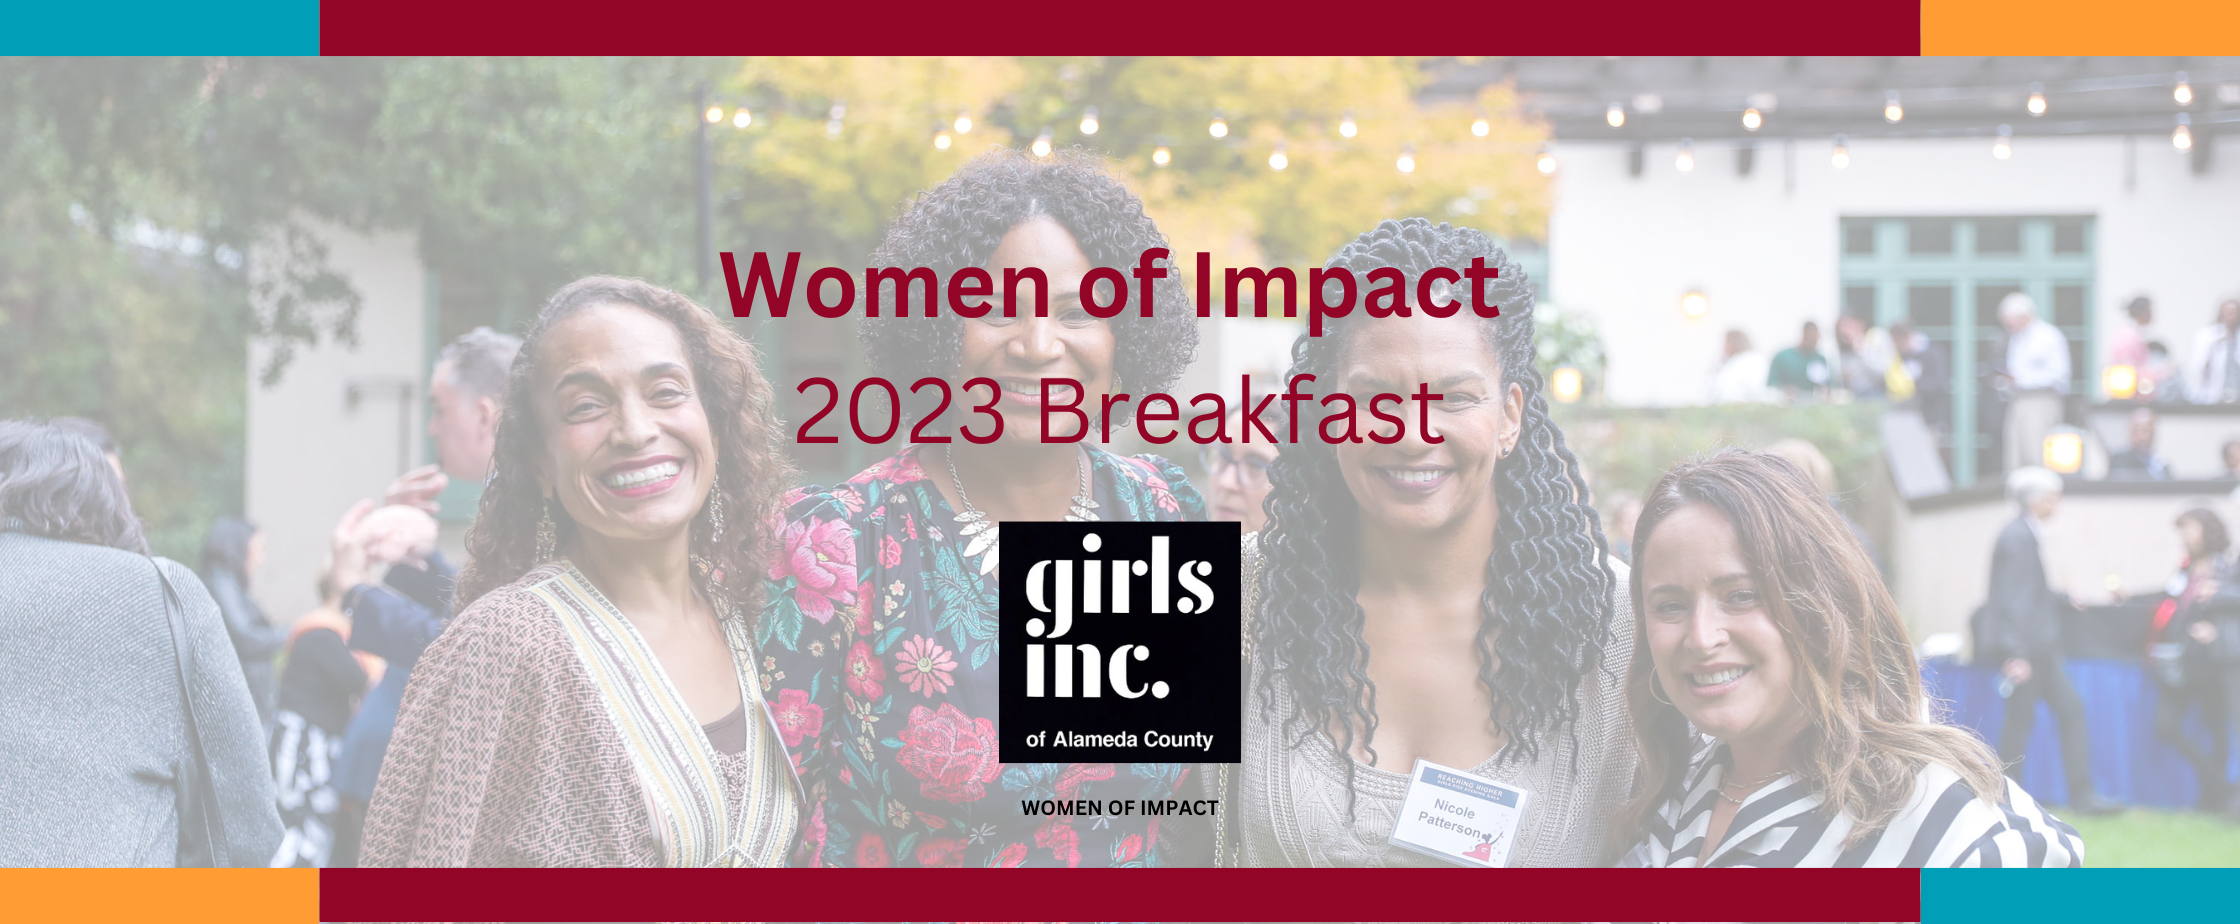 Women of Impact 2023 Breakfast (2240 × 924 px) (4)